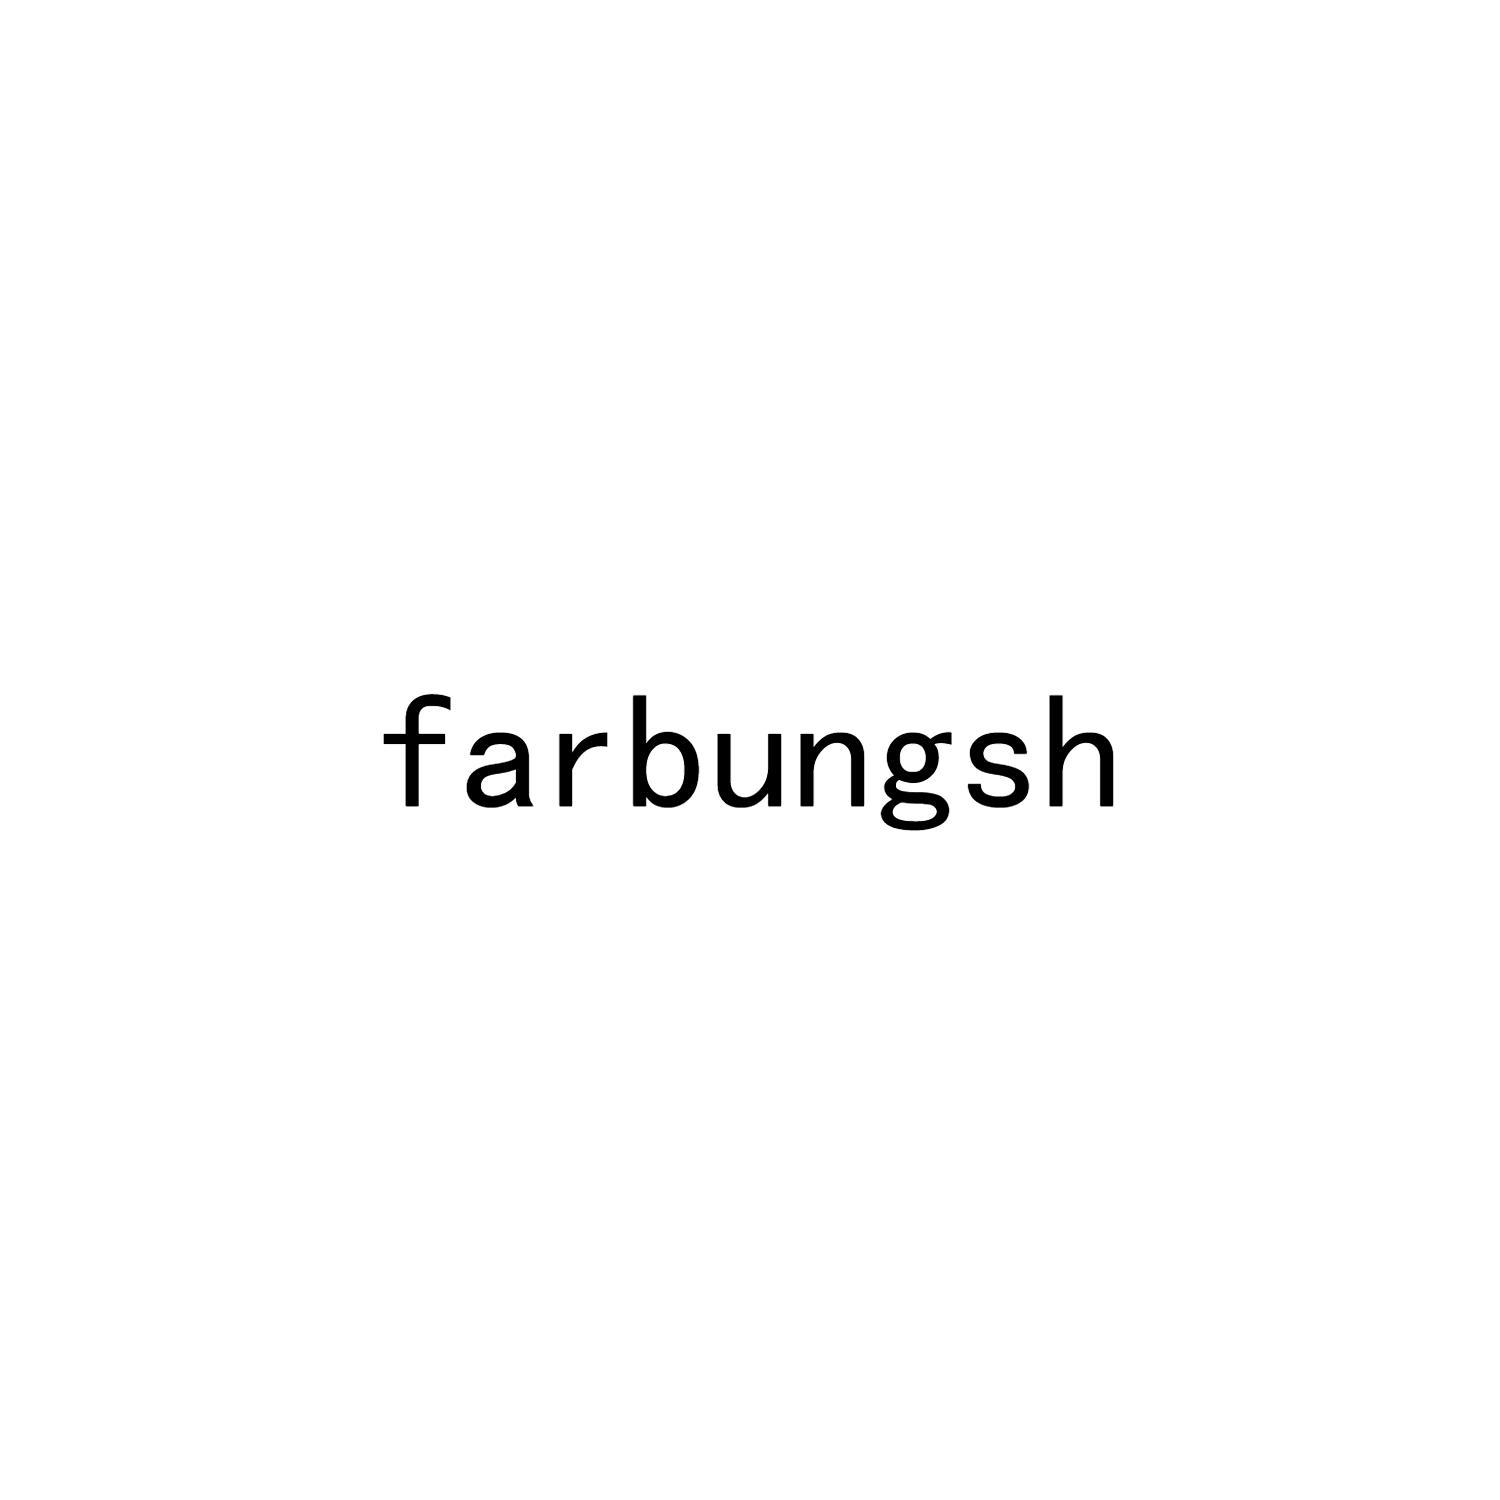 FARBUNGSH